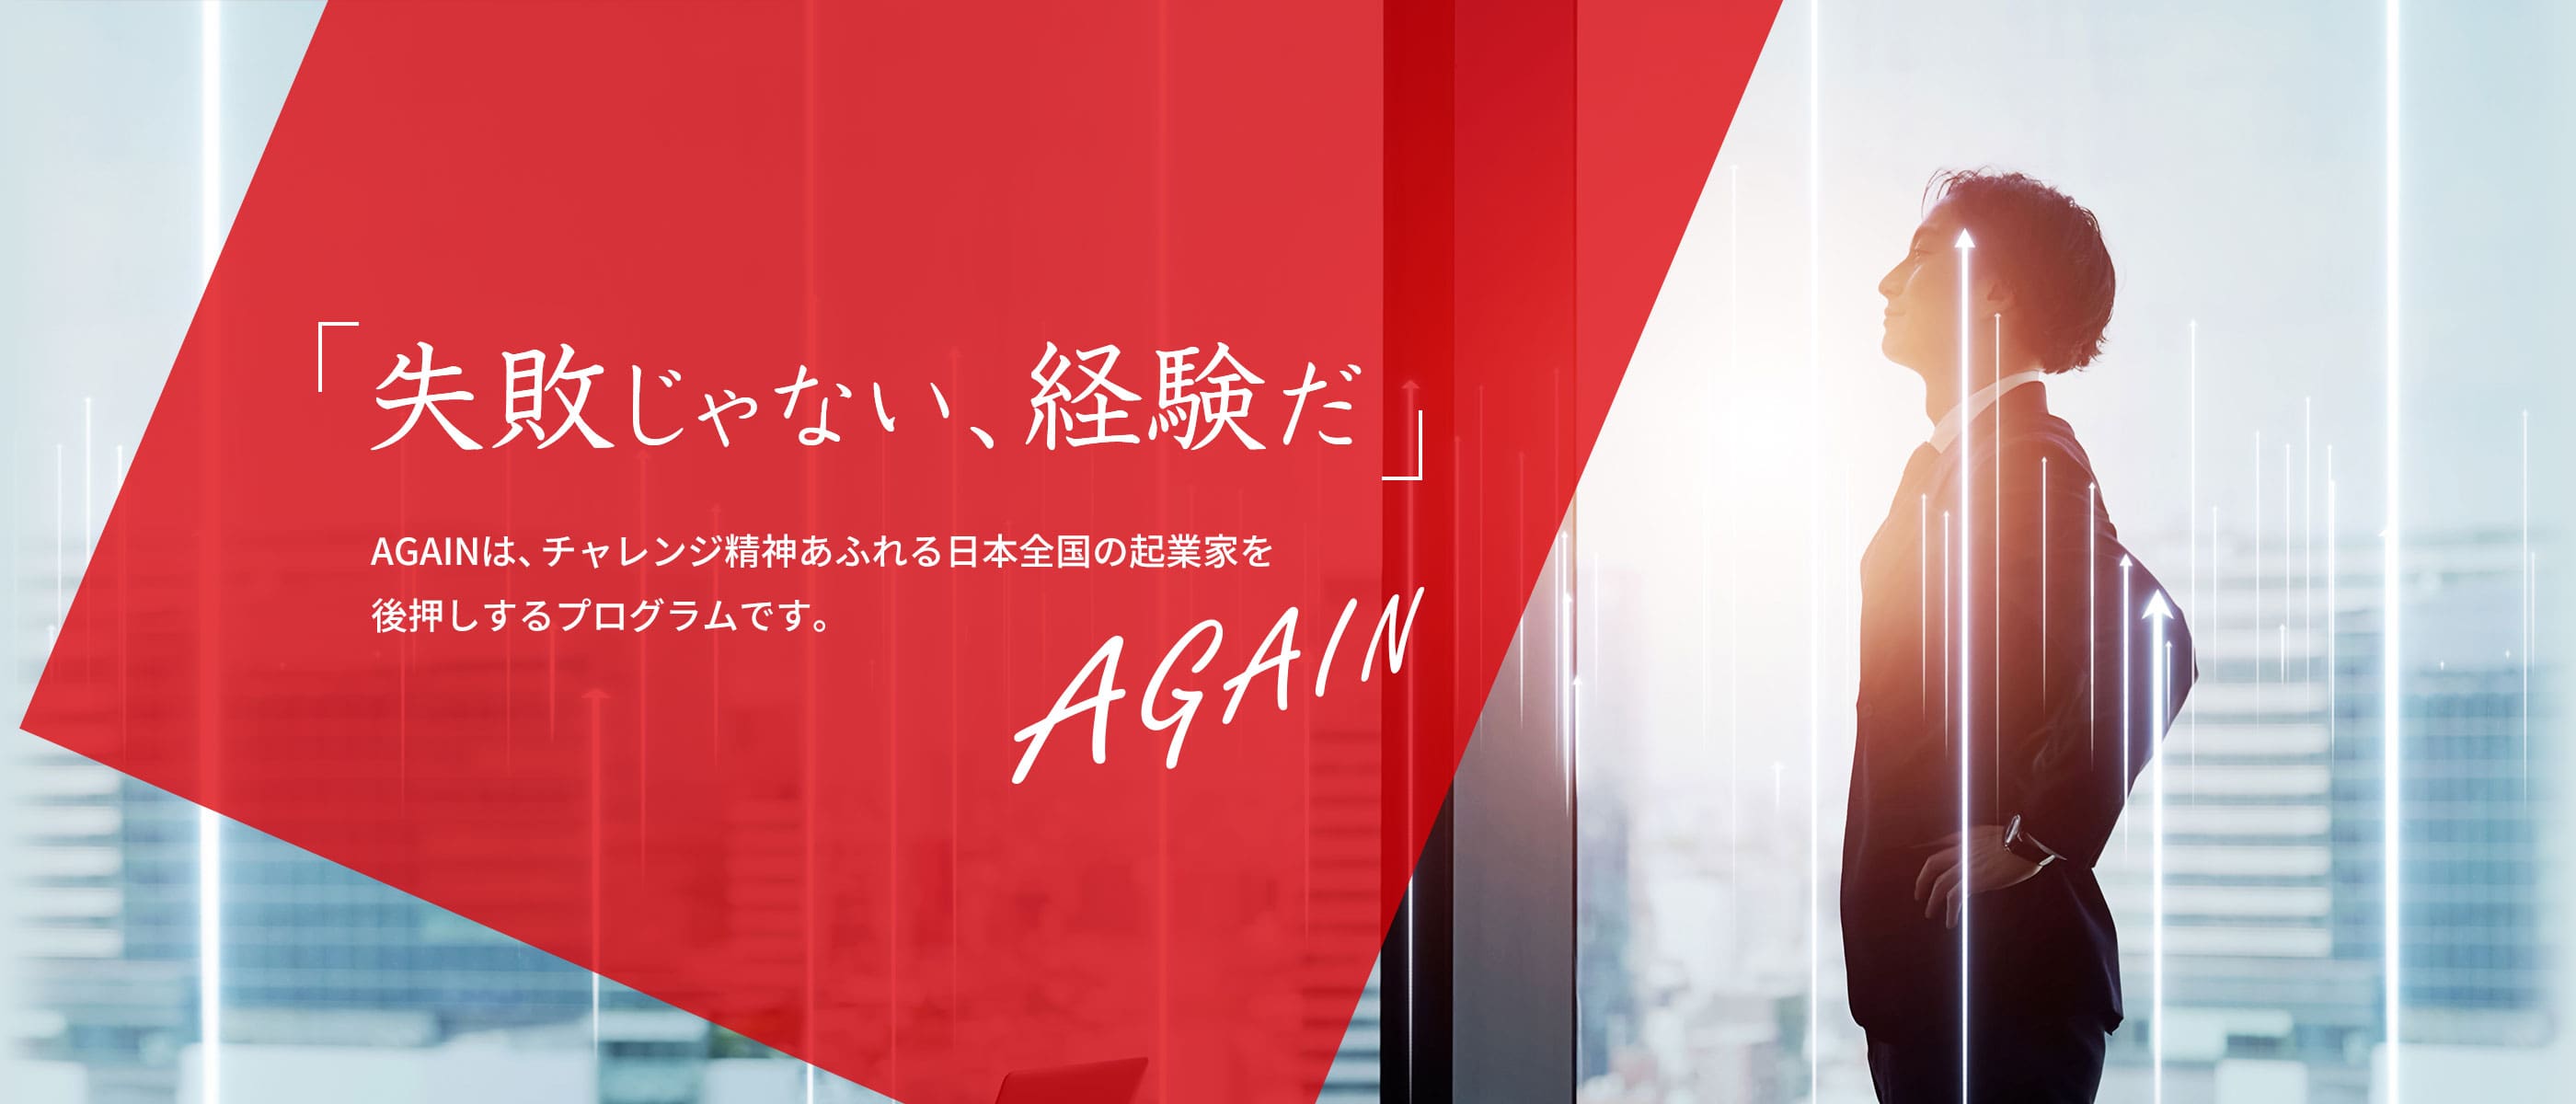 「失敗じゃない、経験だ」AGAINは、チャレンジ精神あふれる日本全国の起業家を後押しするプログラムです。